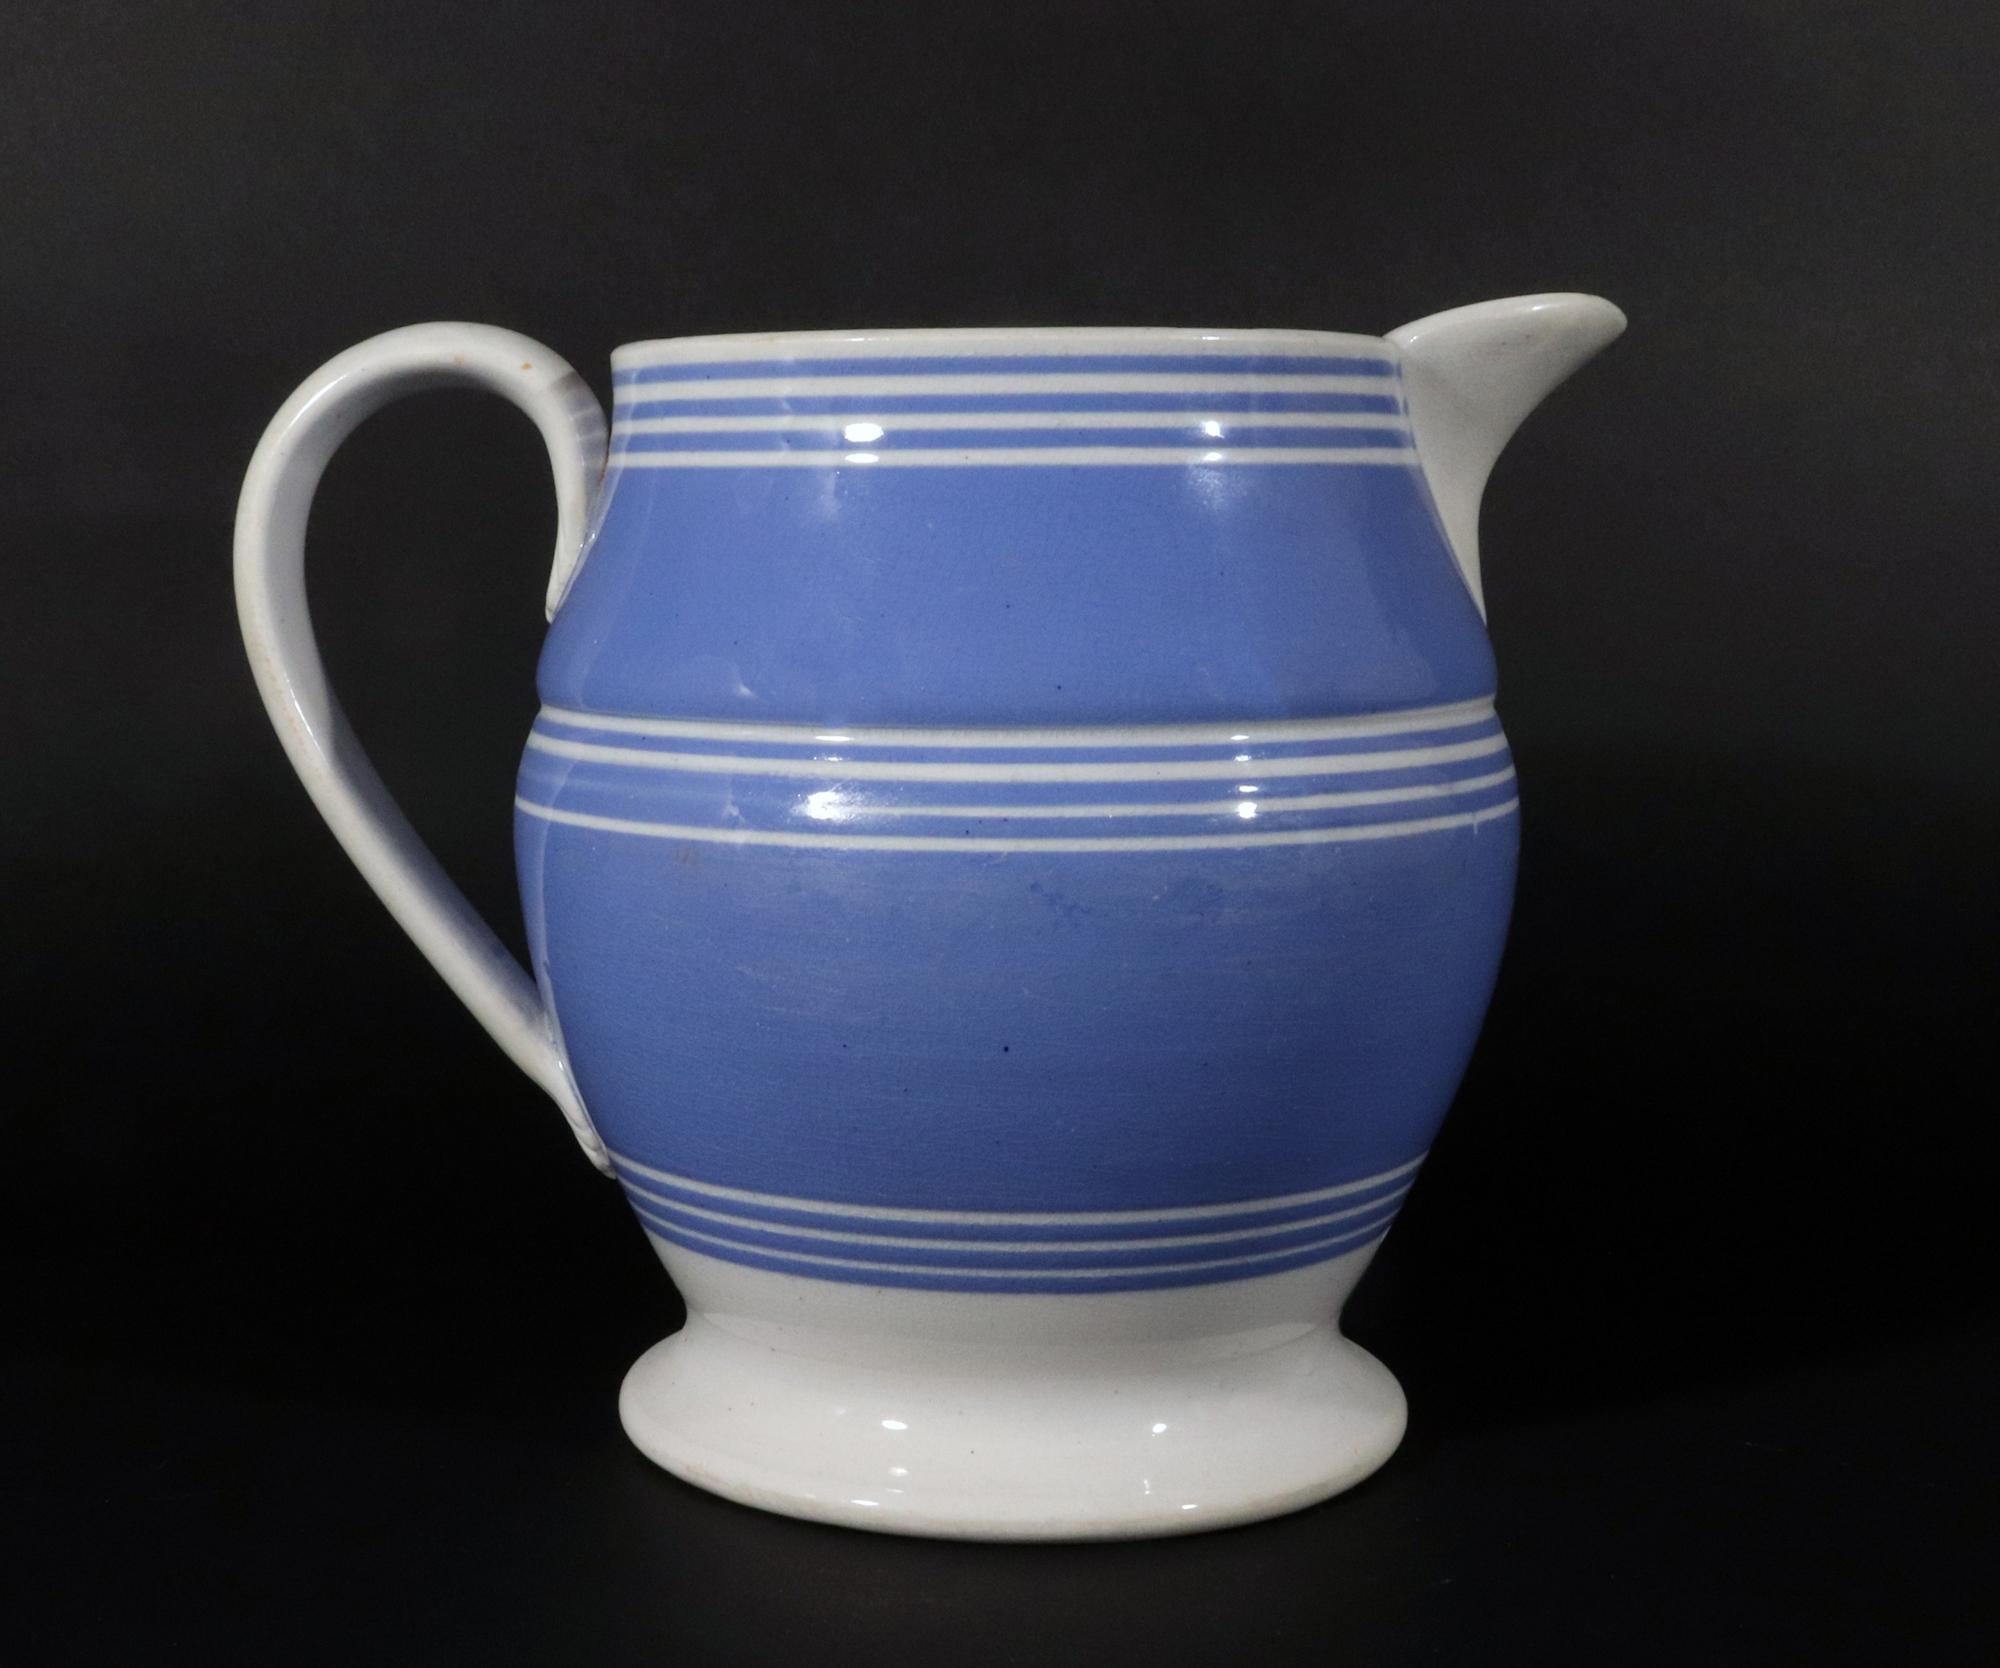 Englische Mokkakanne aus blauem Ton mit weißen Bändern,
CIRCA 1820

Dieser mit Schlicker verzierte Perlglaskrug weist einen leuchtend blauen Schlickergrund auf, der mit drei verschiedenen Gruppen von vier dünnen weißen Streifen verziert ist. Die